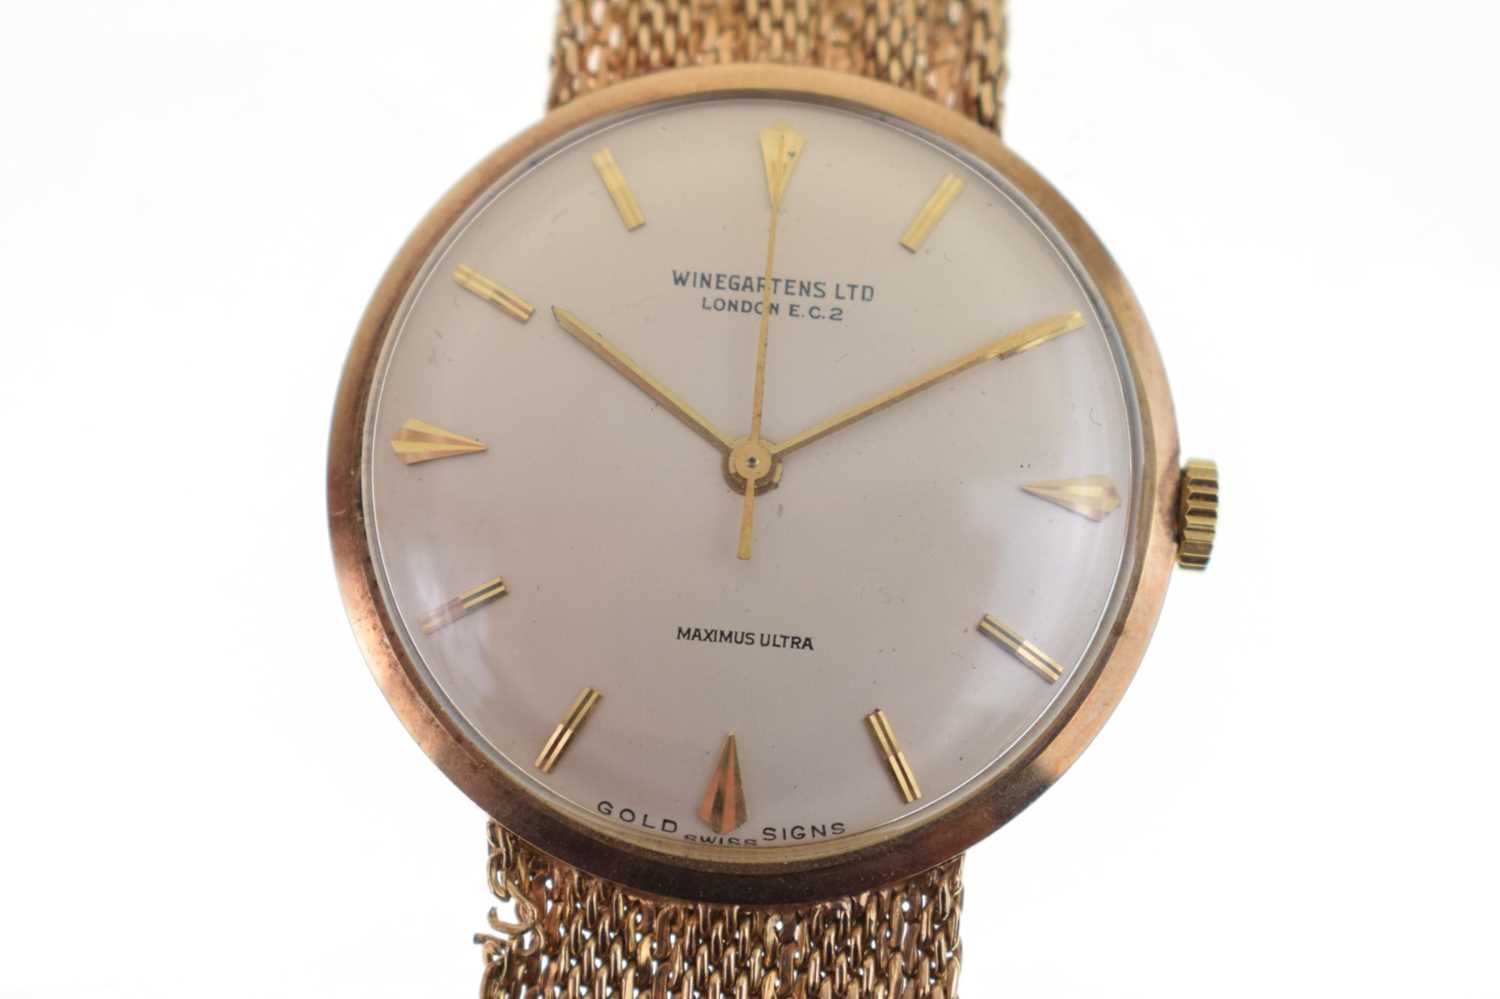 Winegartens - Gentleman's Maximus Ultra 9ct gold bracelet watch - Image 3 of 11